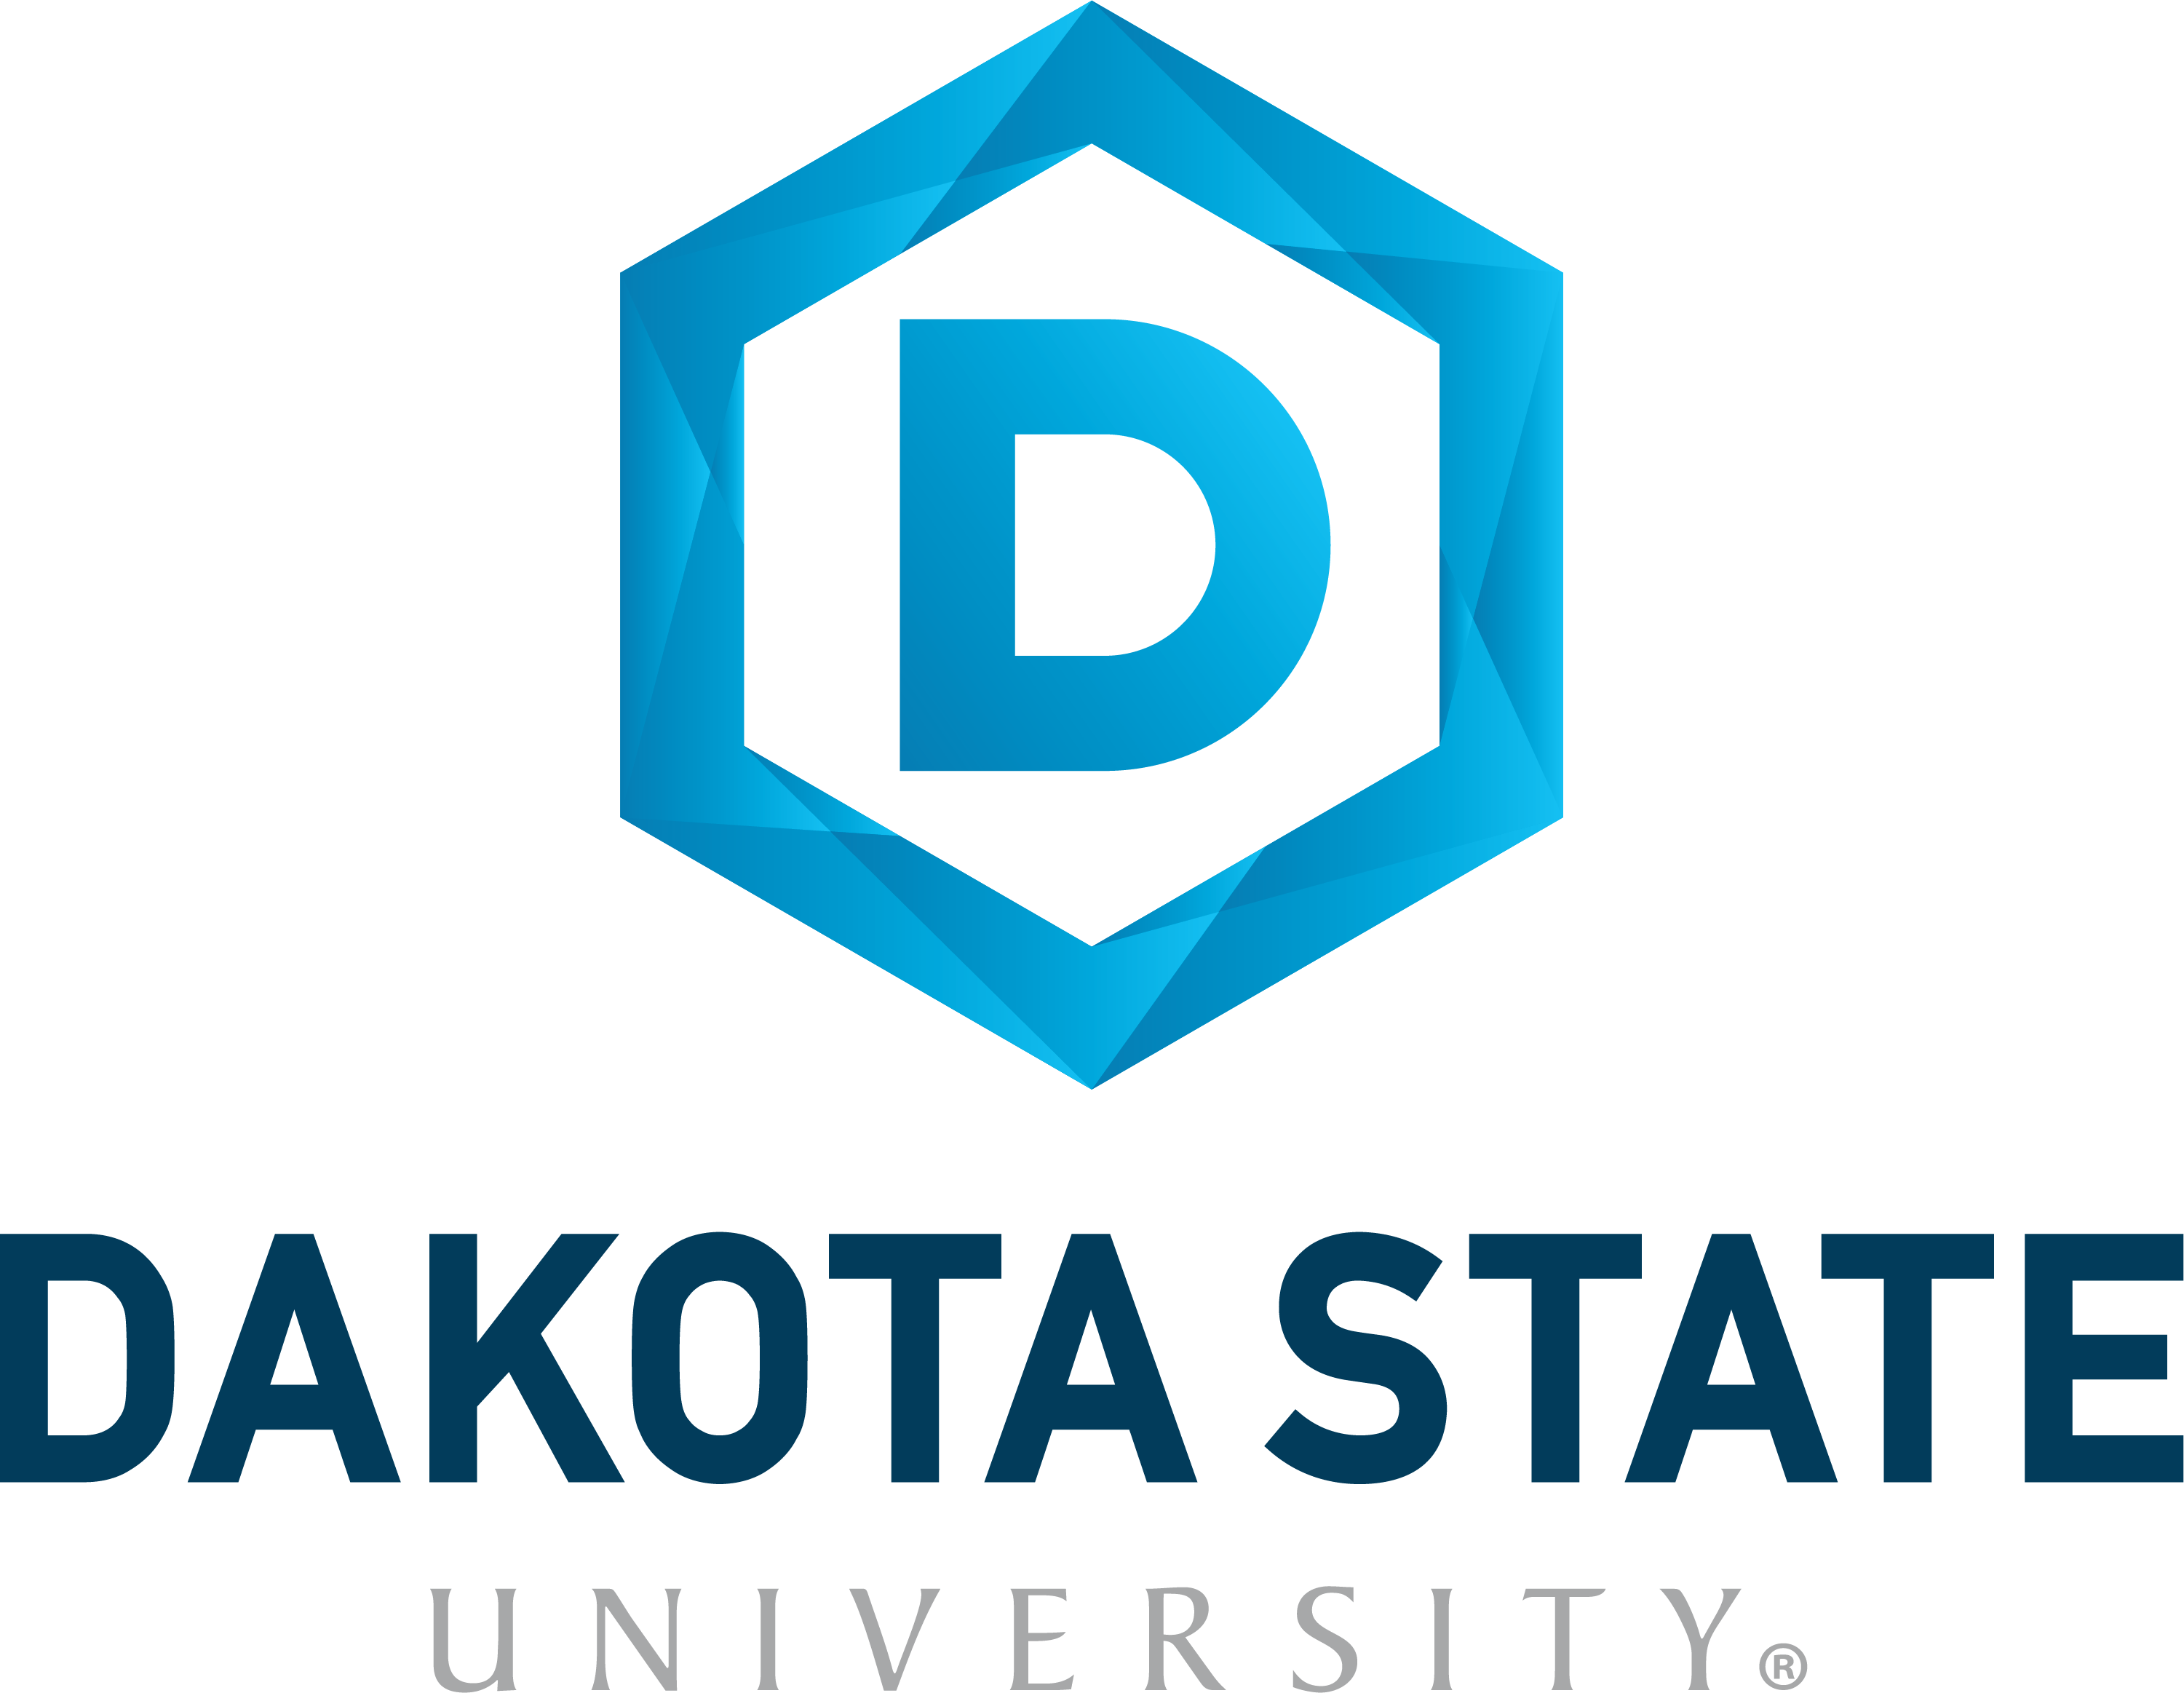 Dakota State University Logo